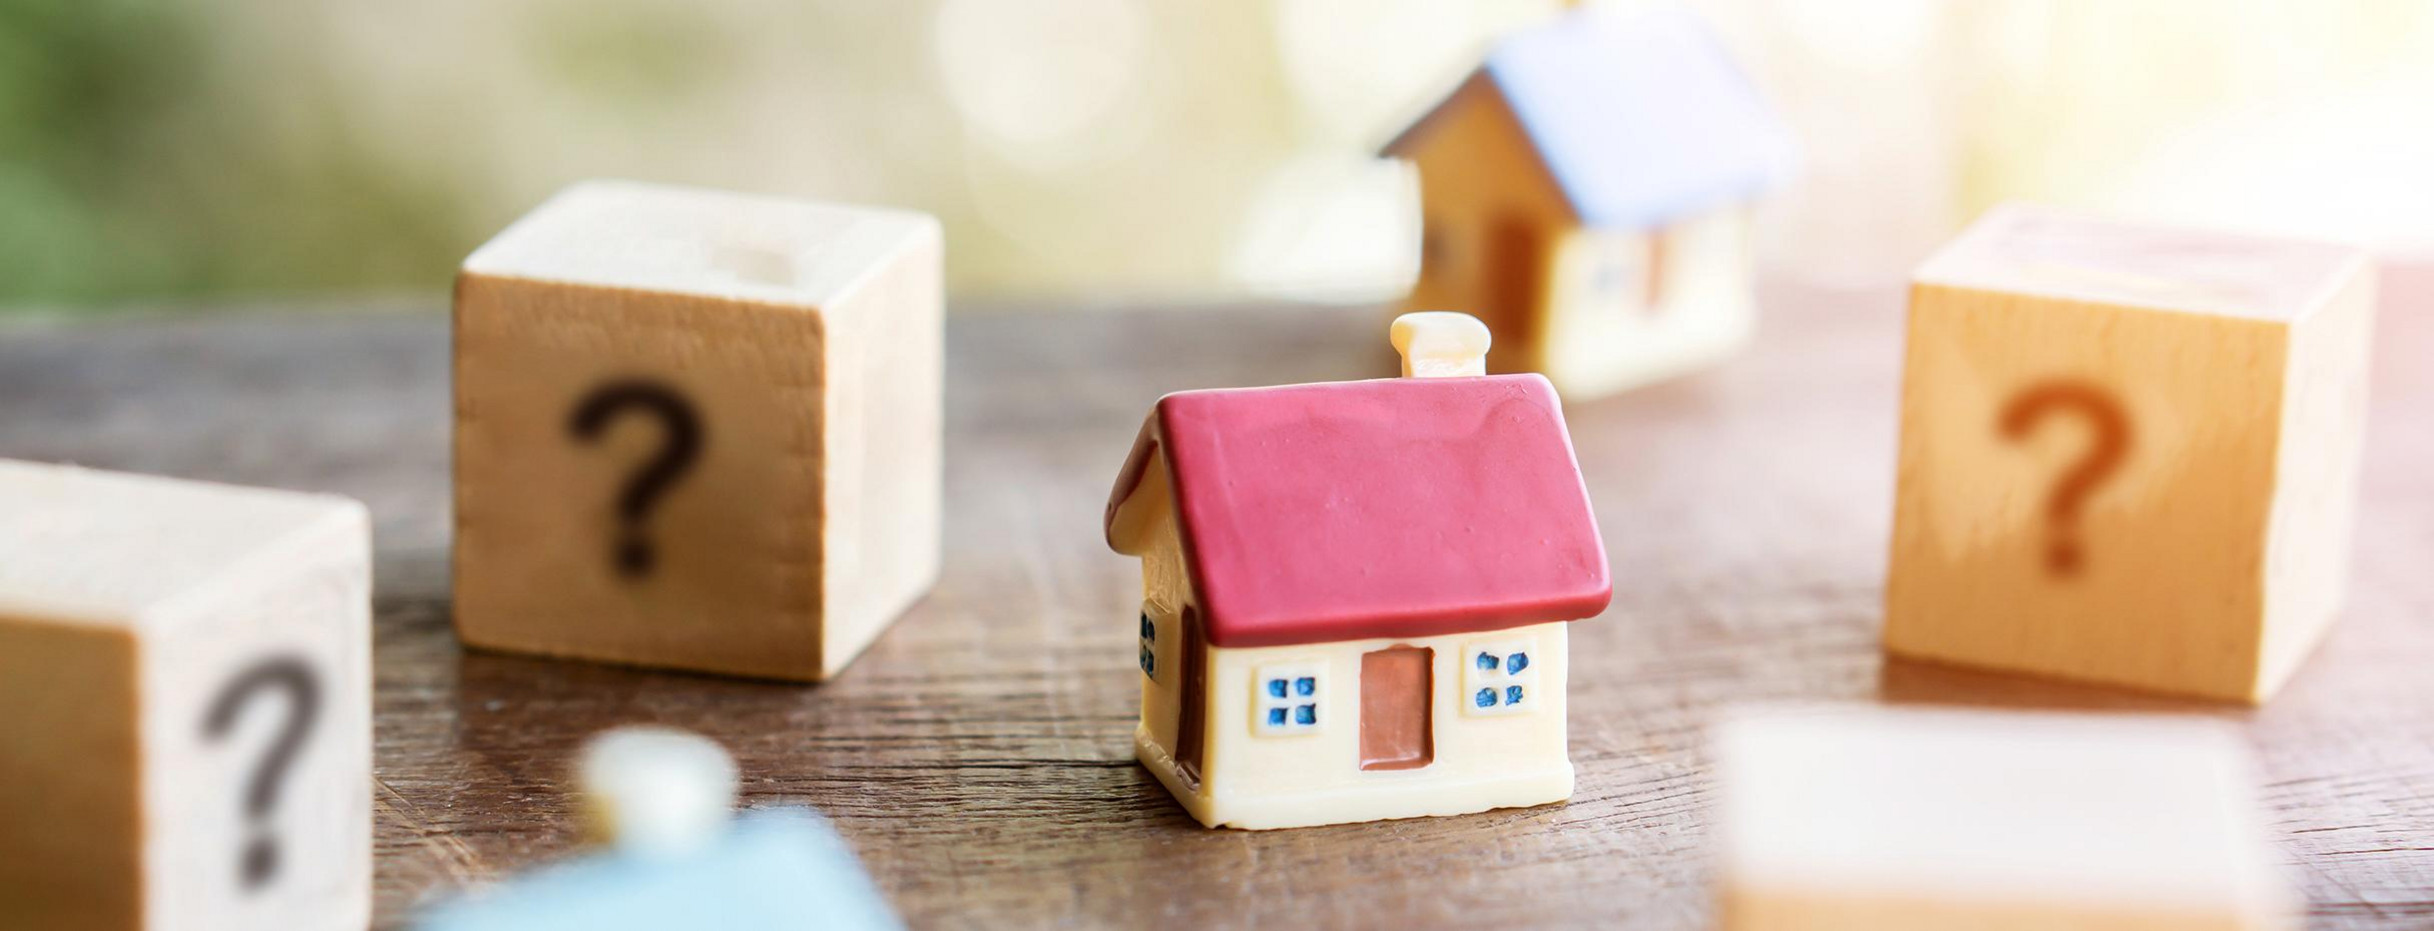 Mehrere Würfel mit Fragezeichen und Miniaturhaus als Modell zur Immobiliensuche